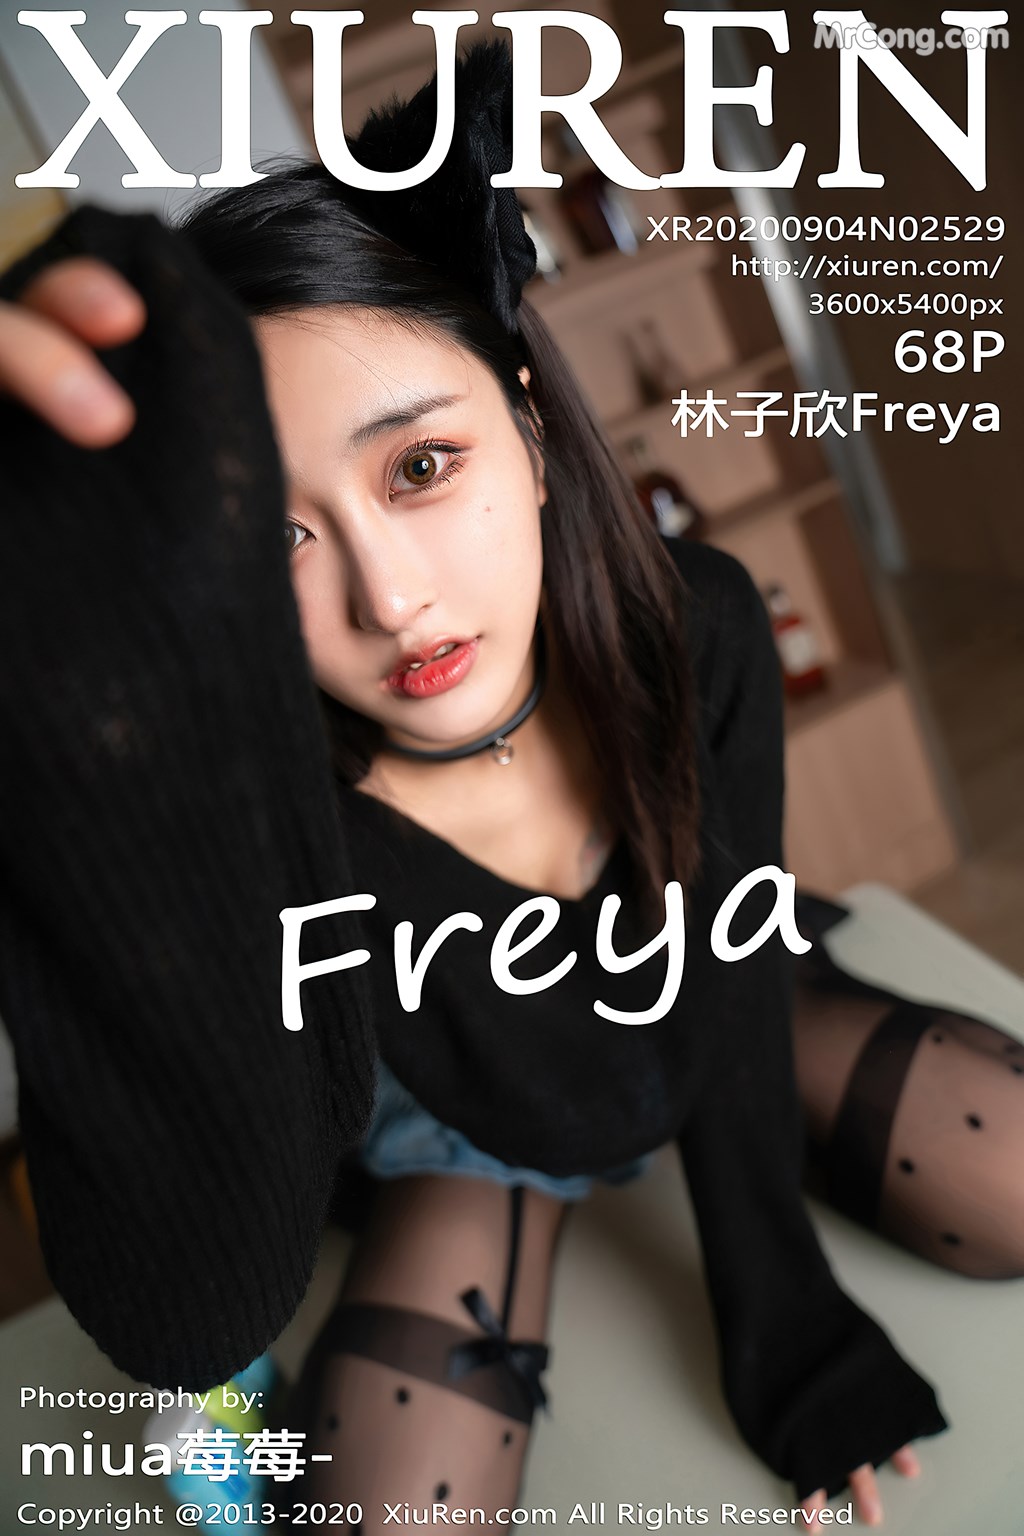 [XIUREN] No.2529 林子欣Freya Cover Photo